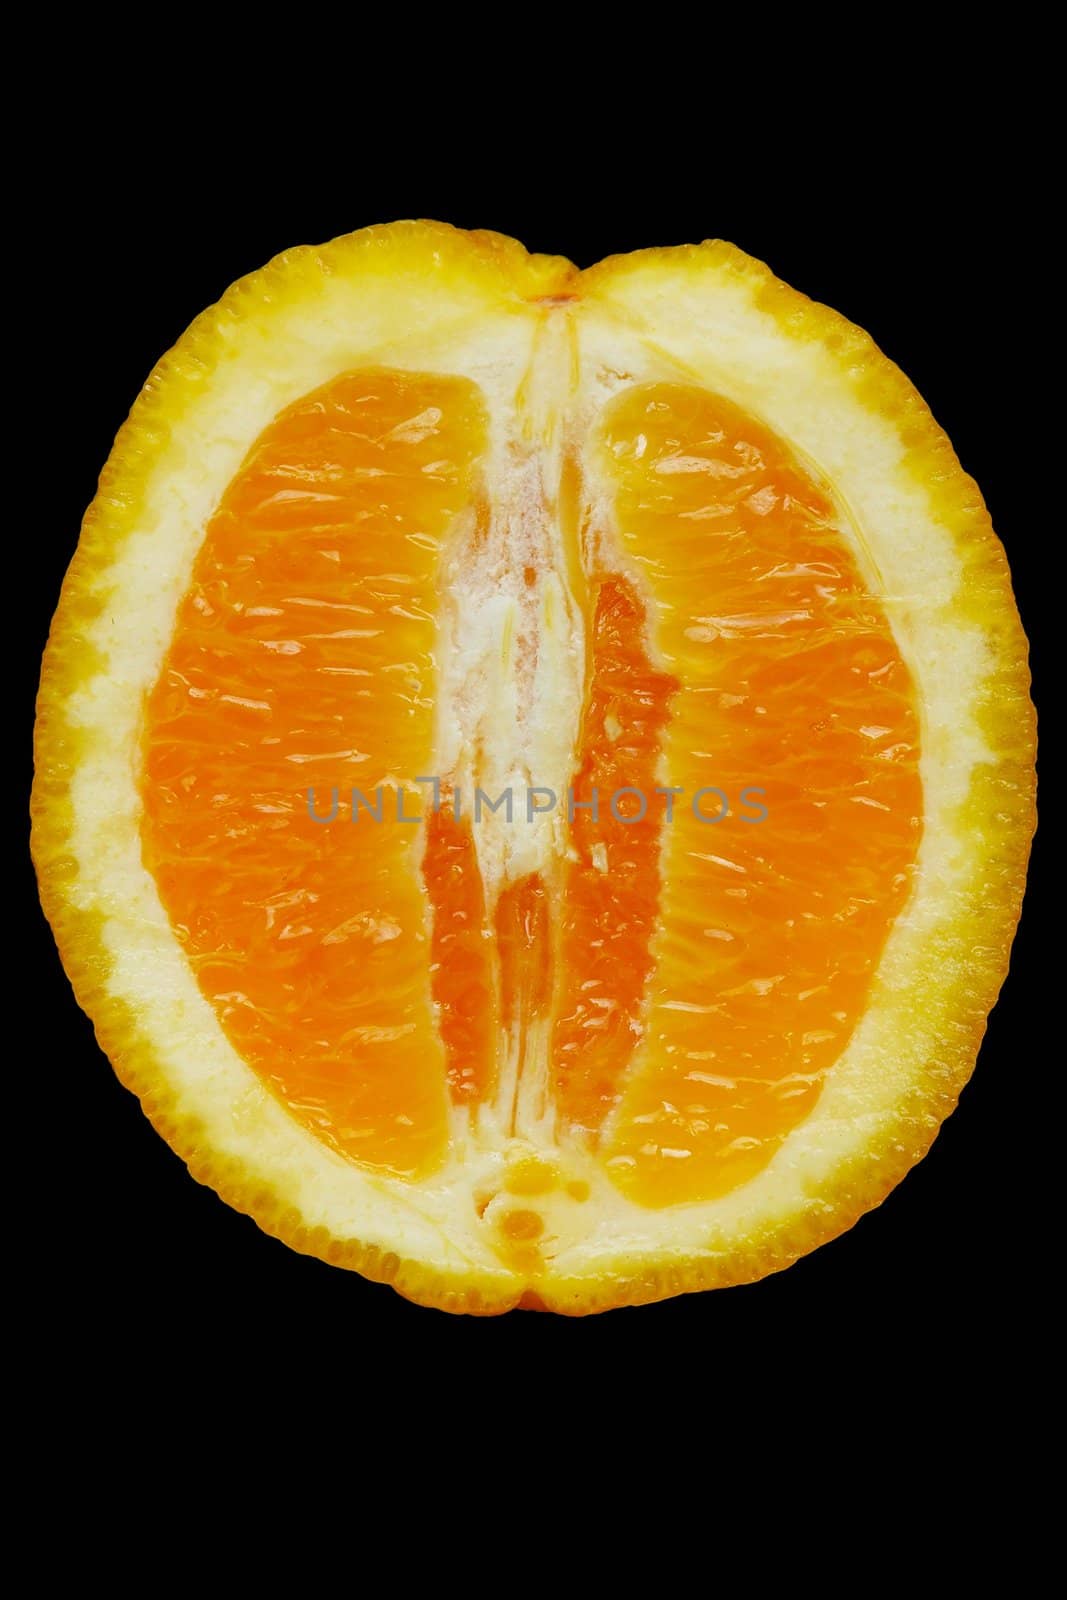 Half of juicy orange against the black background